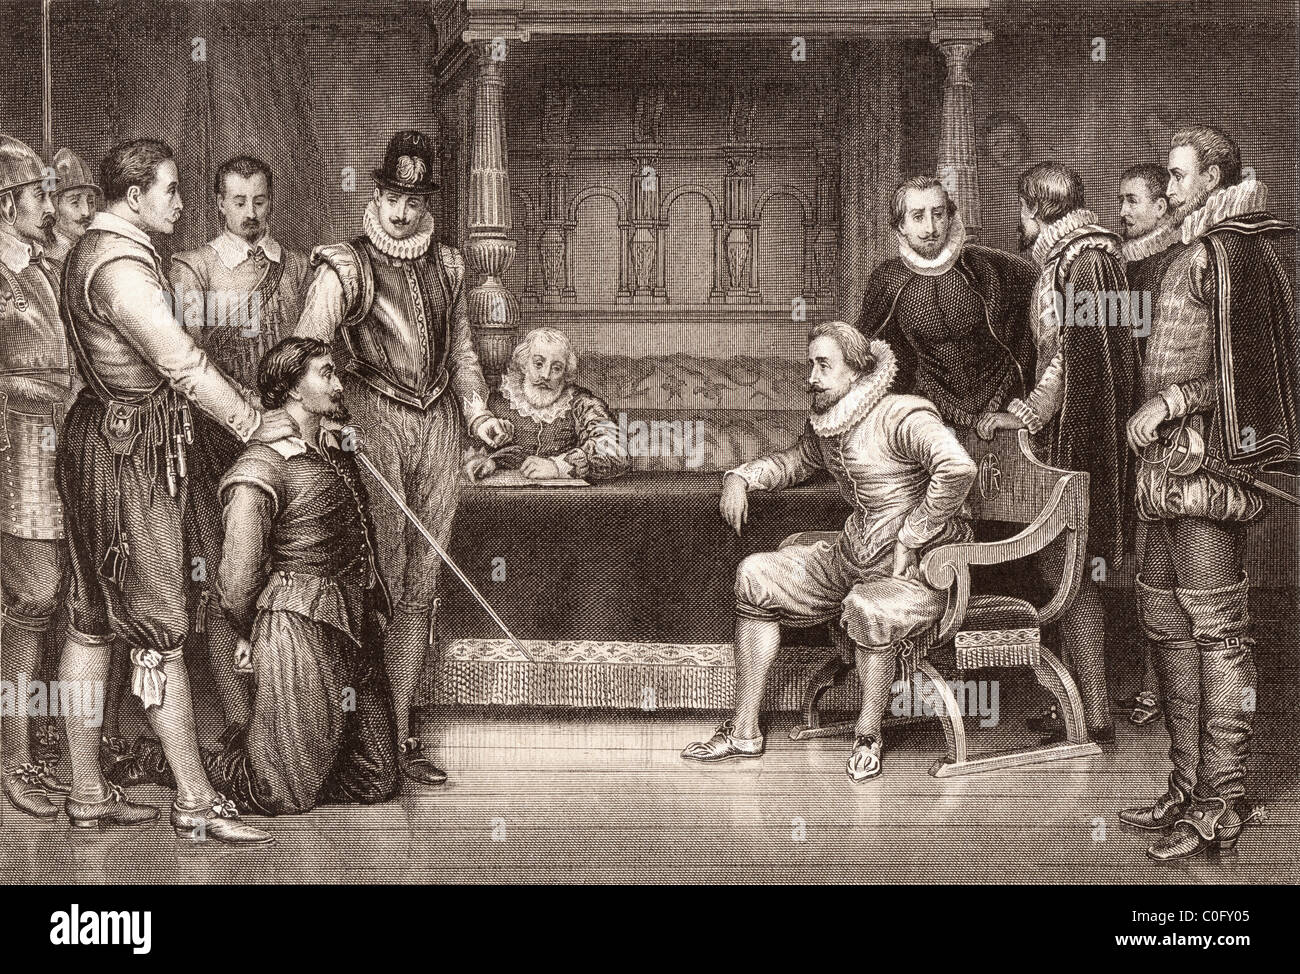 La conspiration. Guy Fawkes interrogé par James I et son conseil dans la chambre du roi Banque D'Images